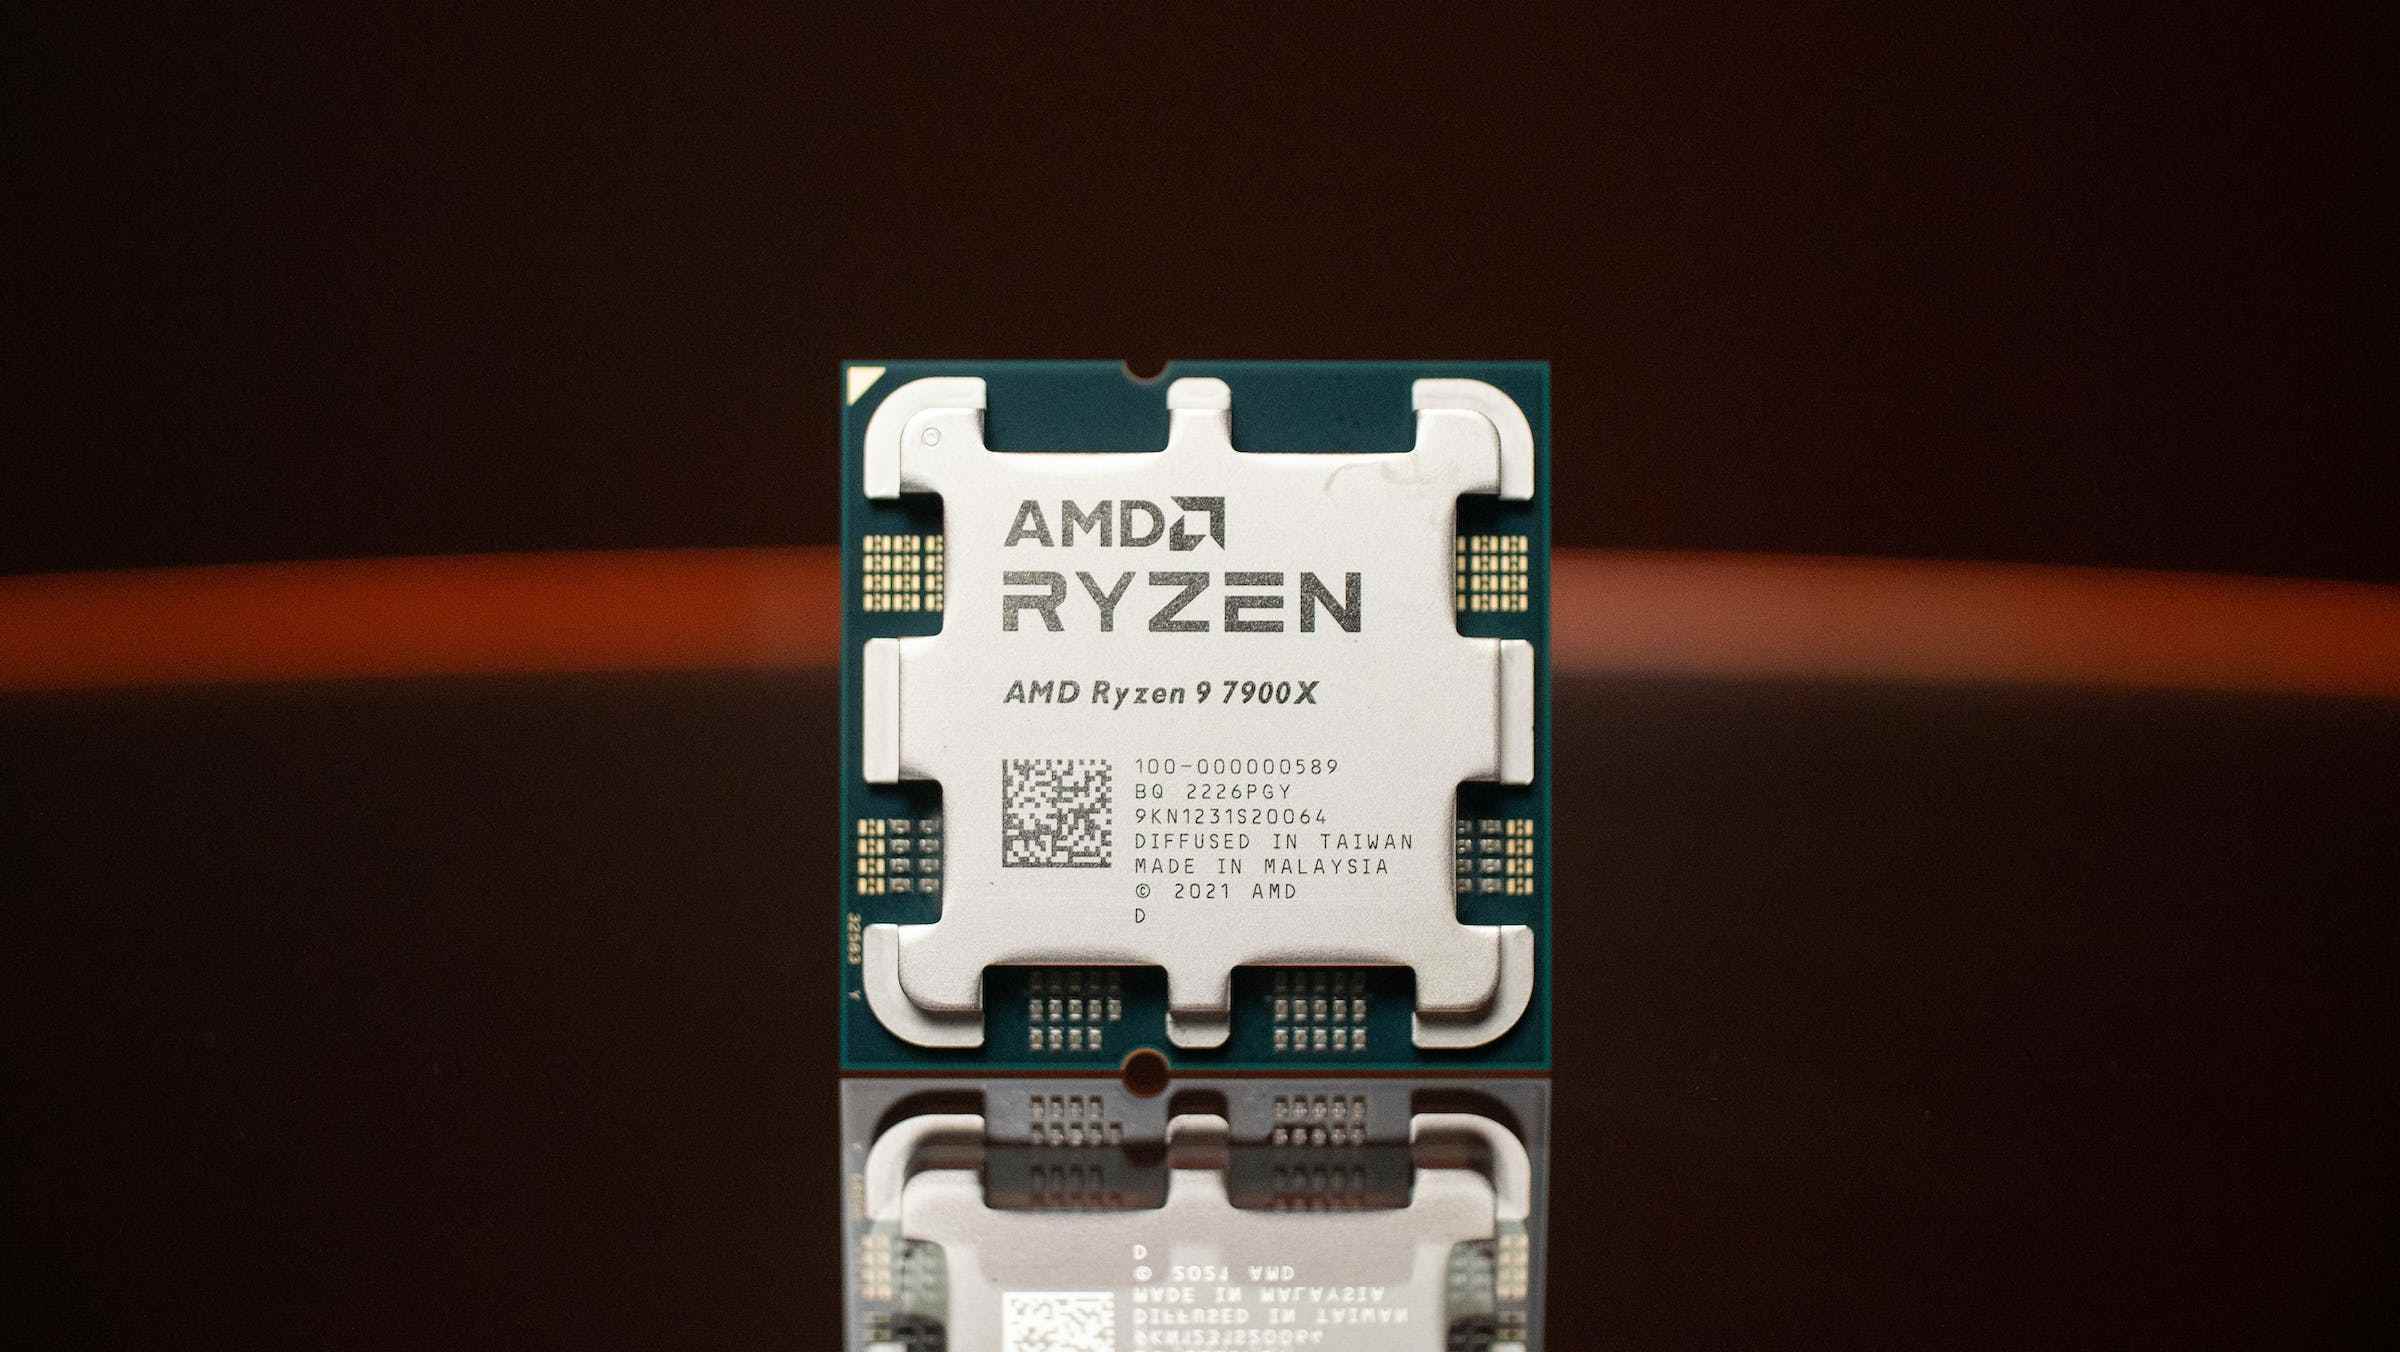 Kutudan çıkan AMD'nin en yeni Ryzen 9 7900X'inin fotoğrafı